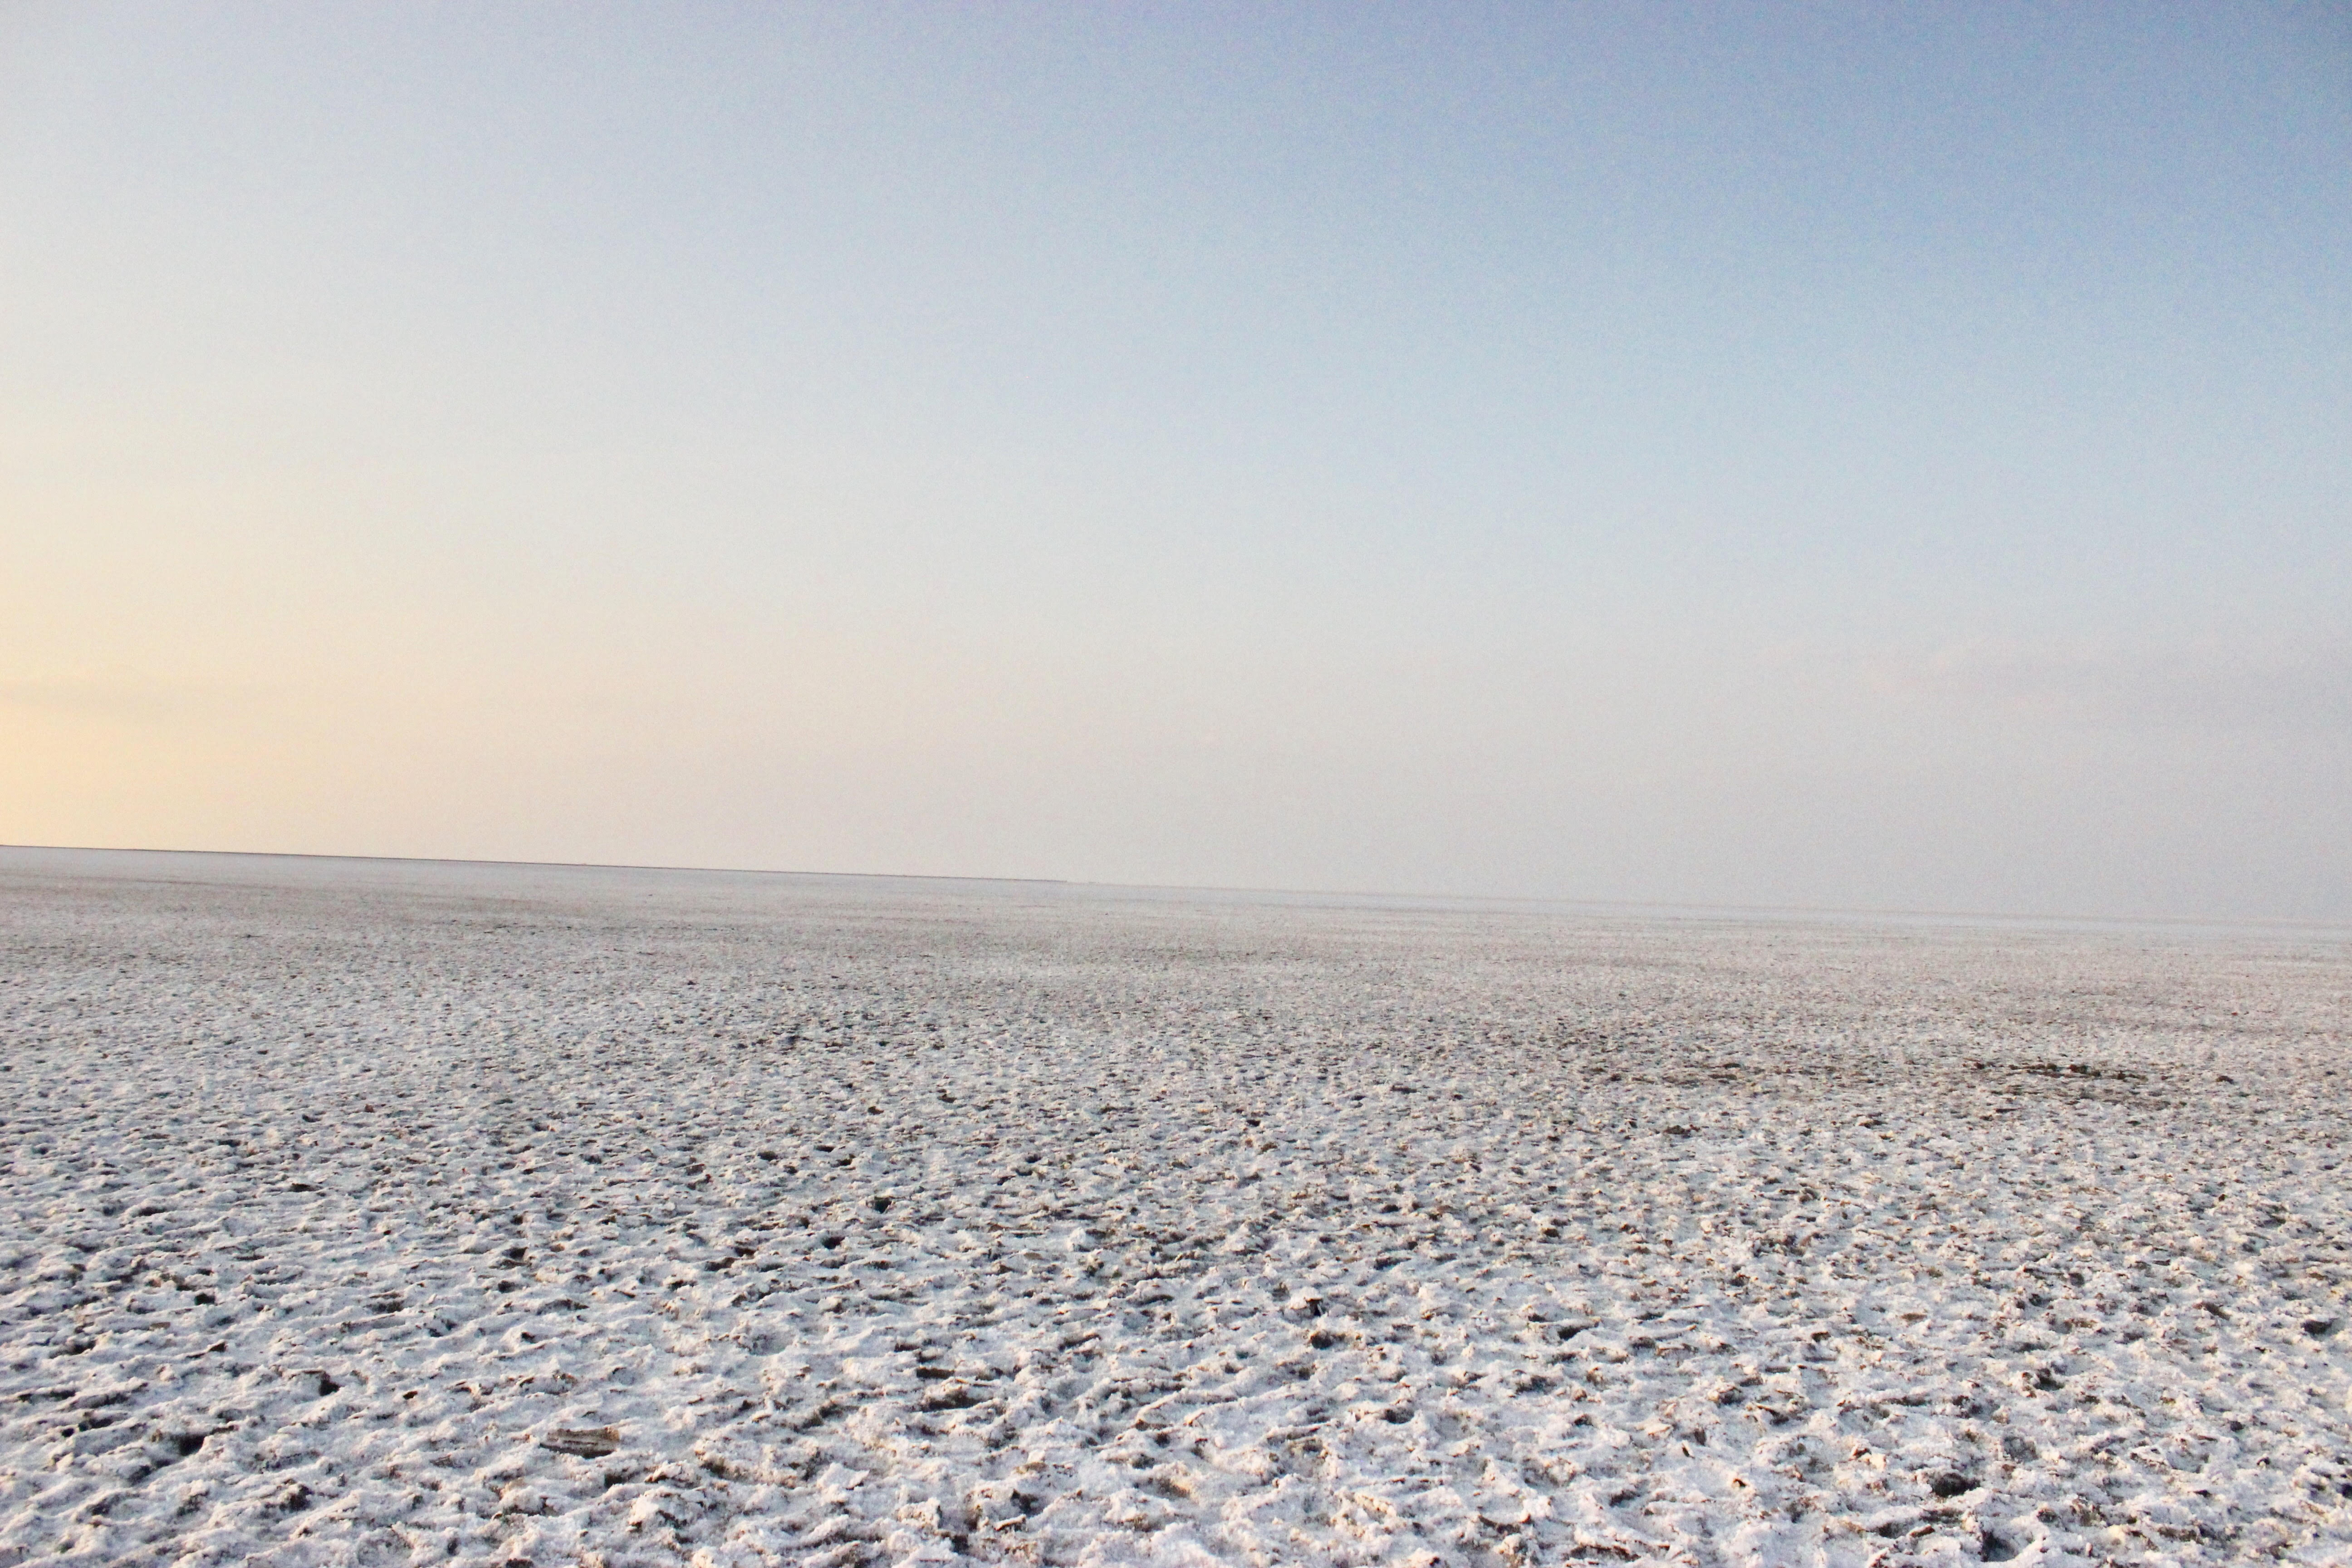 Le Rann de Kutch est l’un des plus grands déserts salés du monde